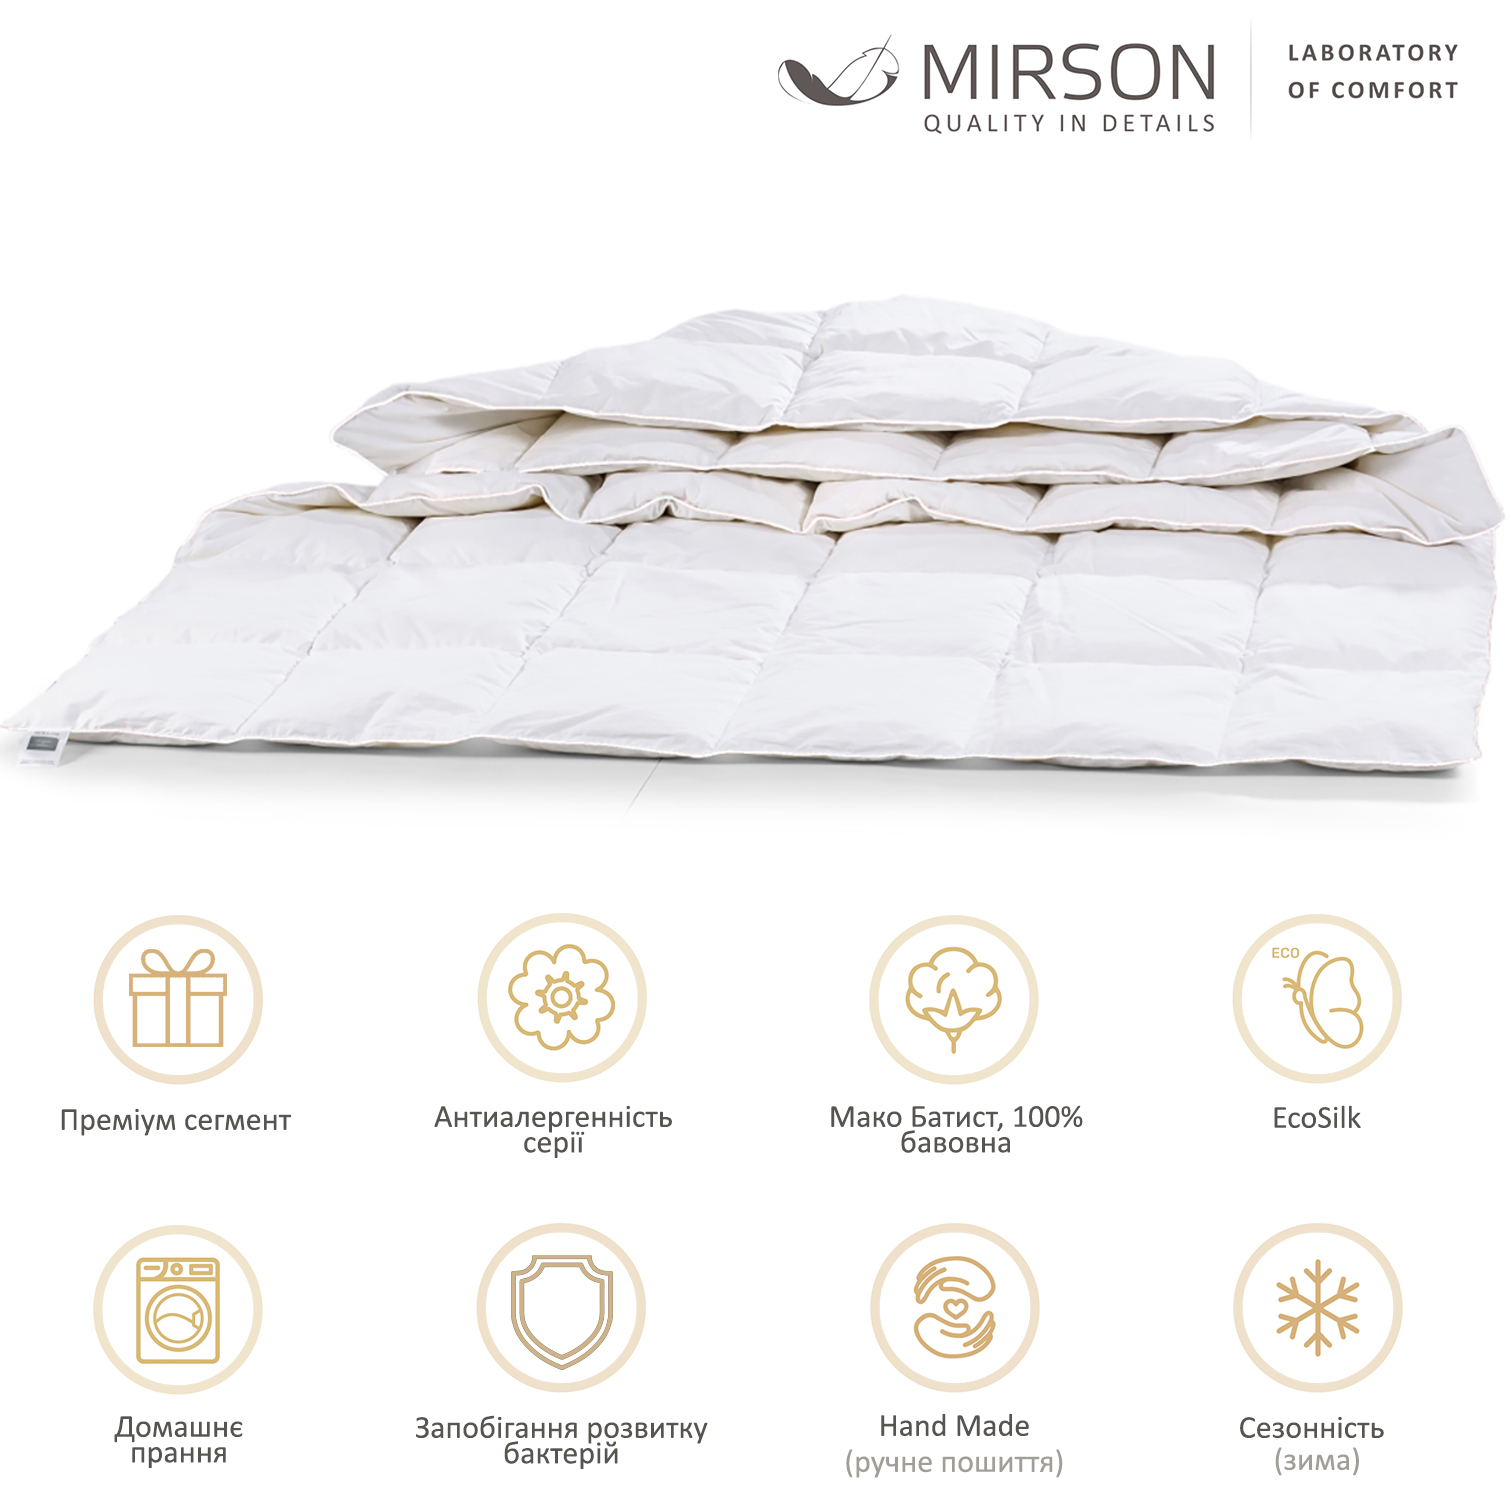 Одеяло антиаллергенное MirSon Luxury Exclusive EcoSilk №1317, зимнее, 220x240 см, белое (237054463) - фото 5